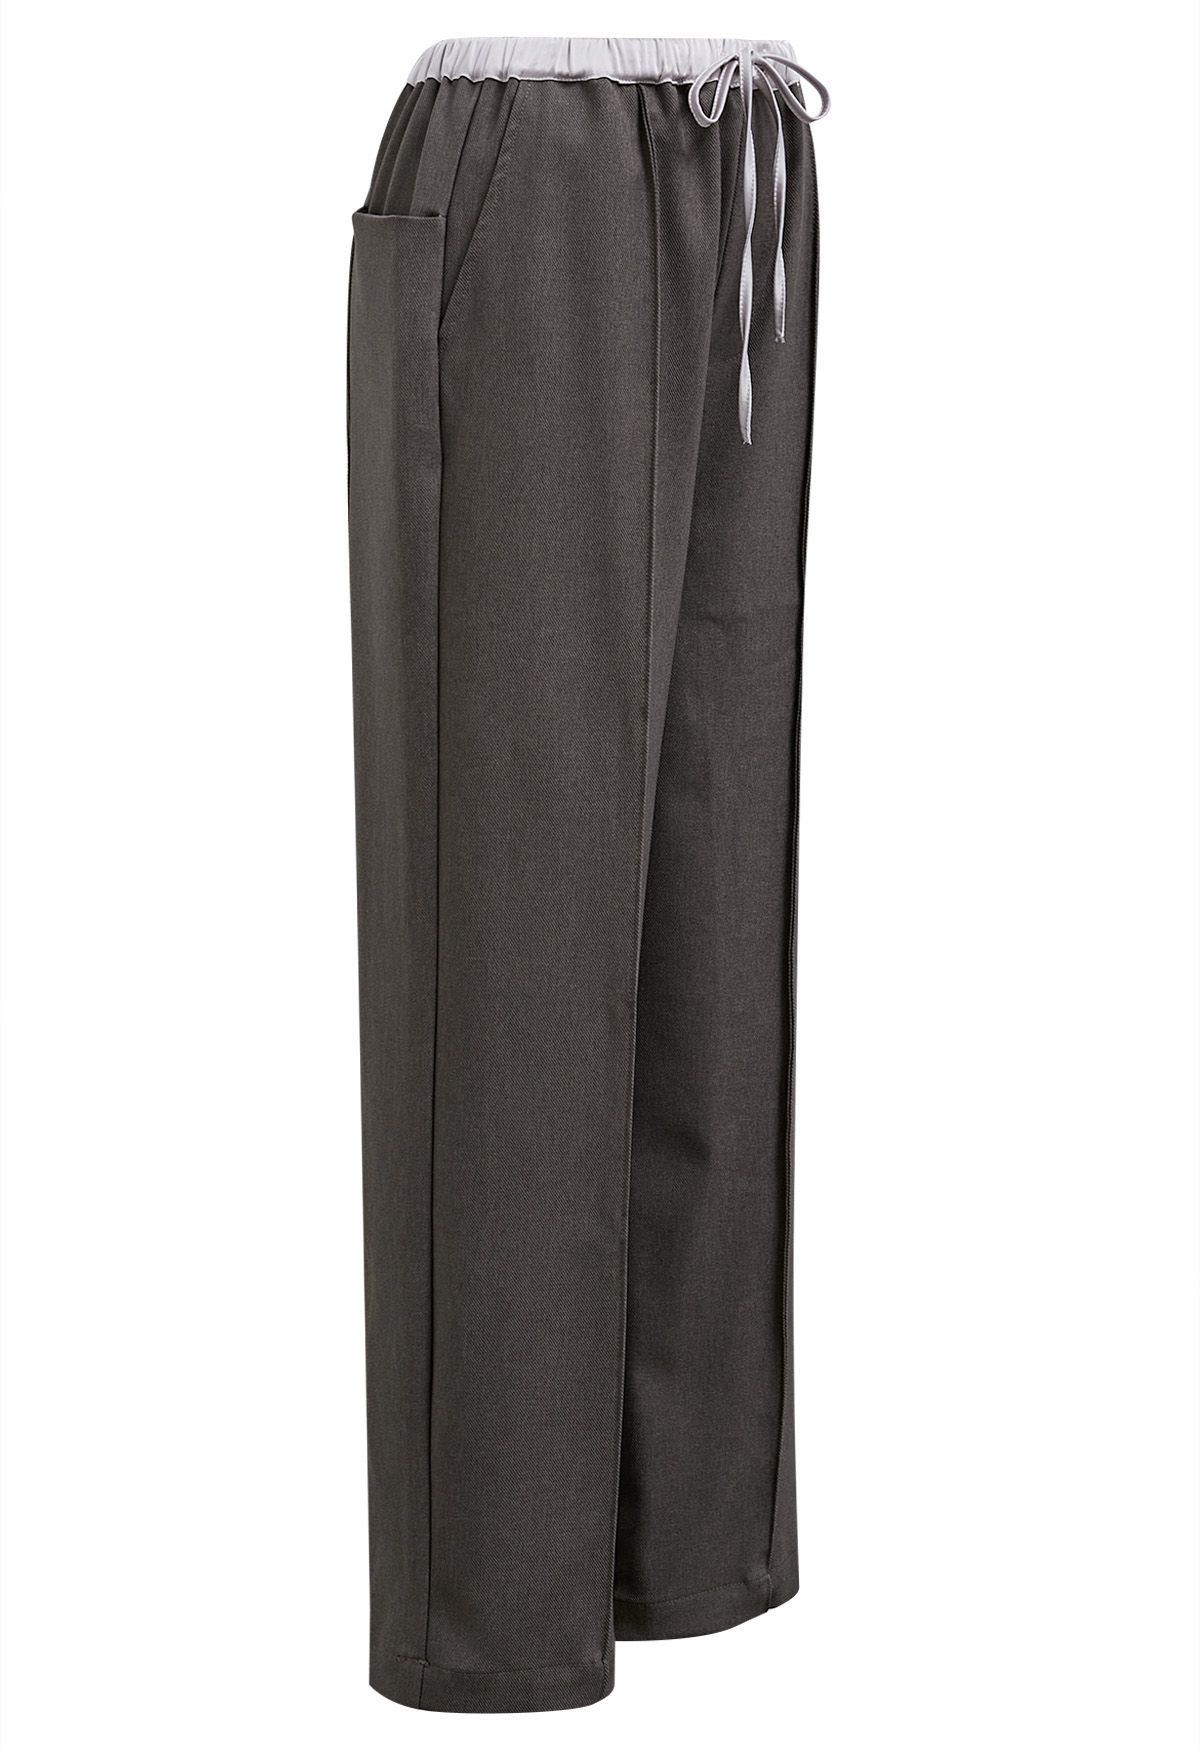 Pantalones rectos con detalle de costura en la cintura en contraste en color topo